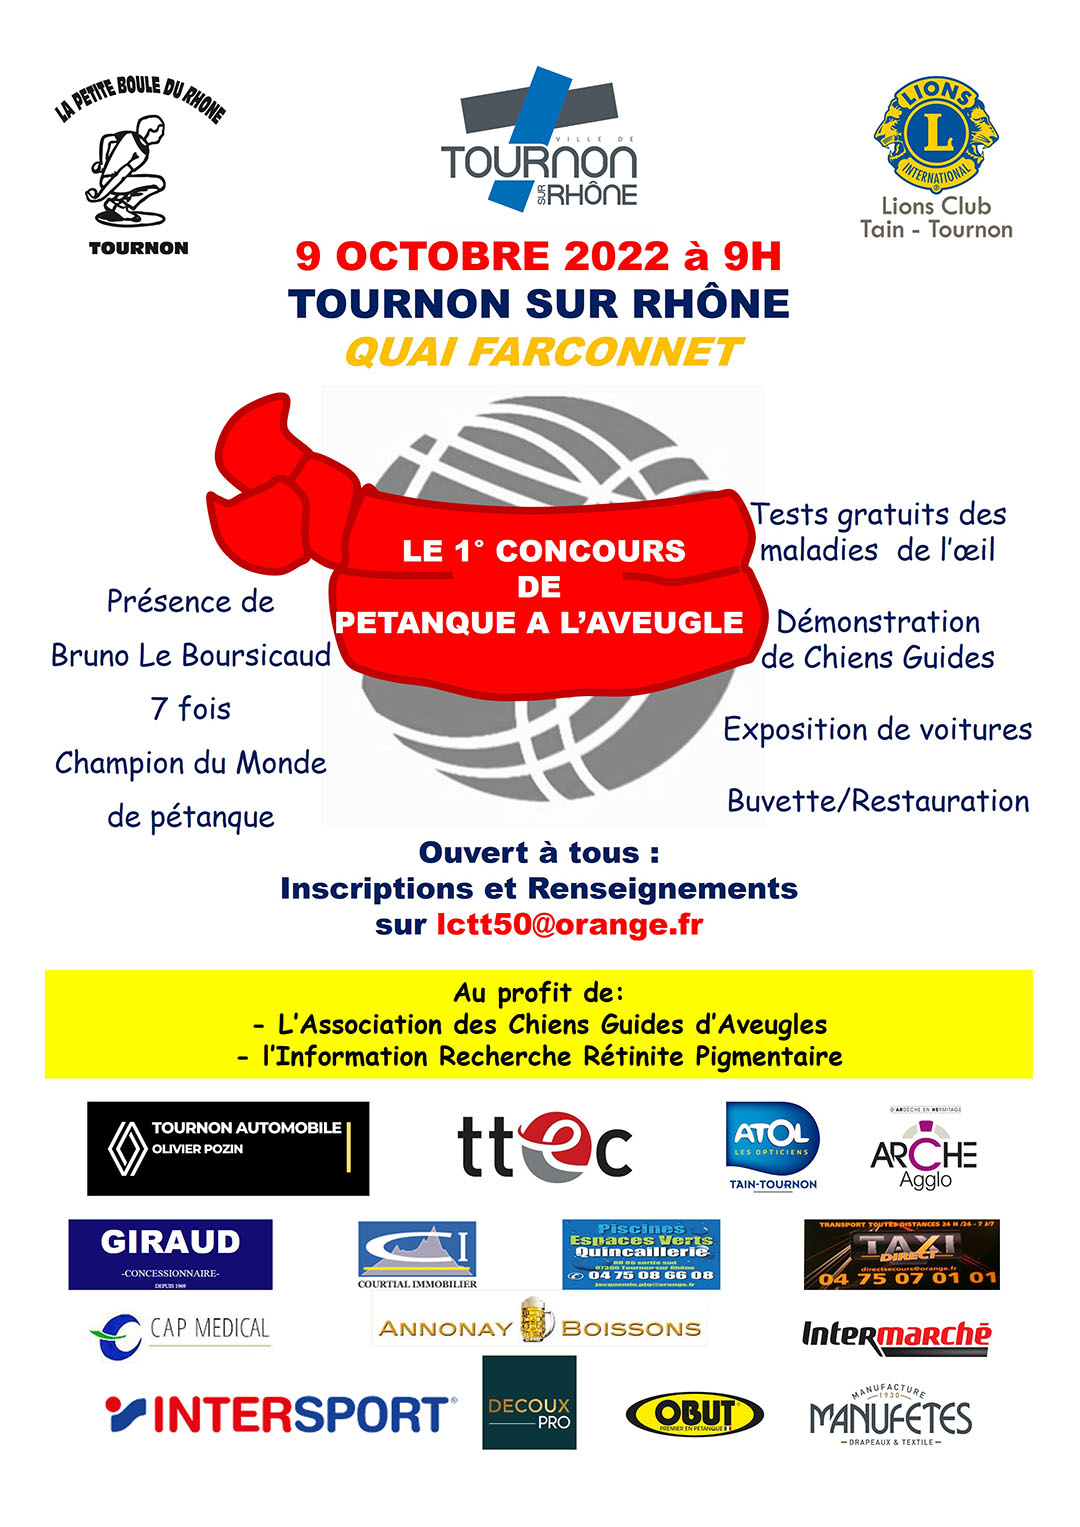 La Ville de Tournon-sur-Rhône accueille le 1er concours de pétanque à l’aveugle le dimanche 9 octobre matin, place du Quai Farconnet.